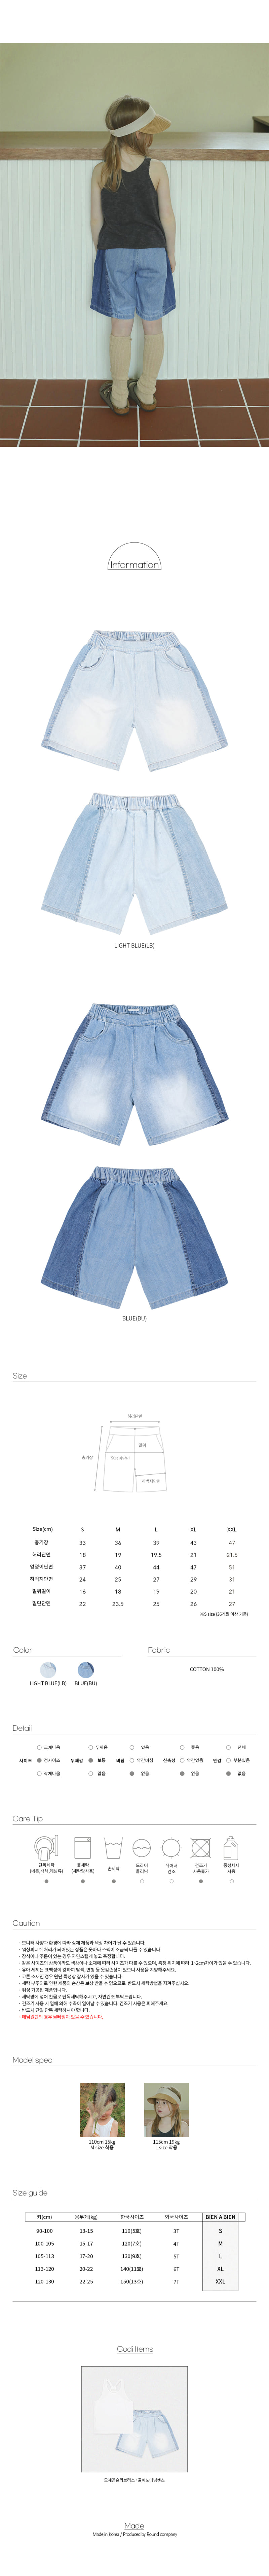 Bien a Bien - Korean Children Fashion - #todddlerfashion - Colpino Jeans - 3